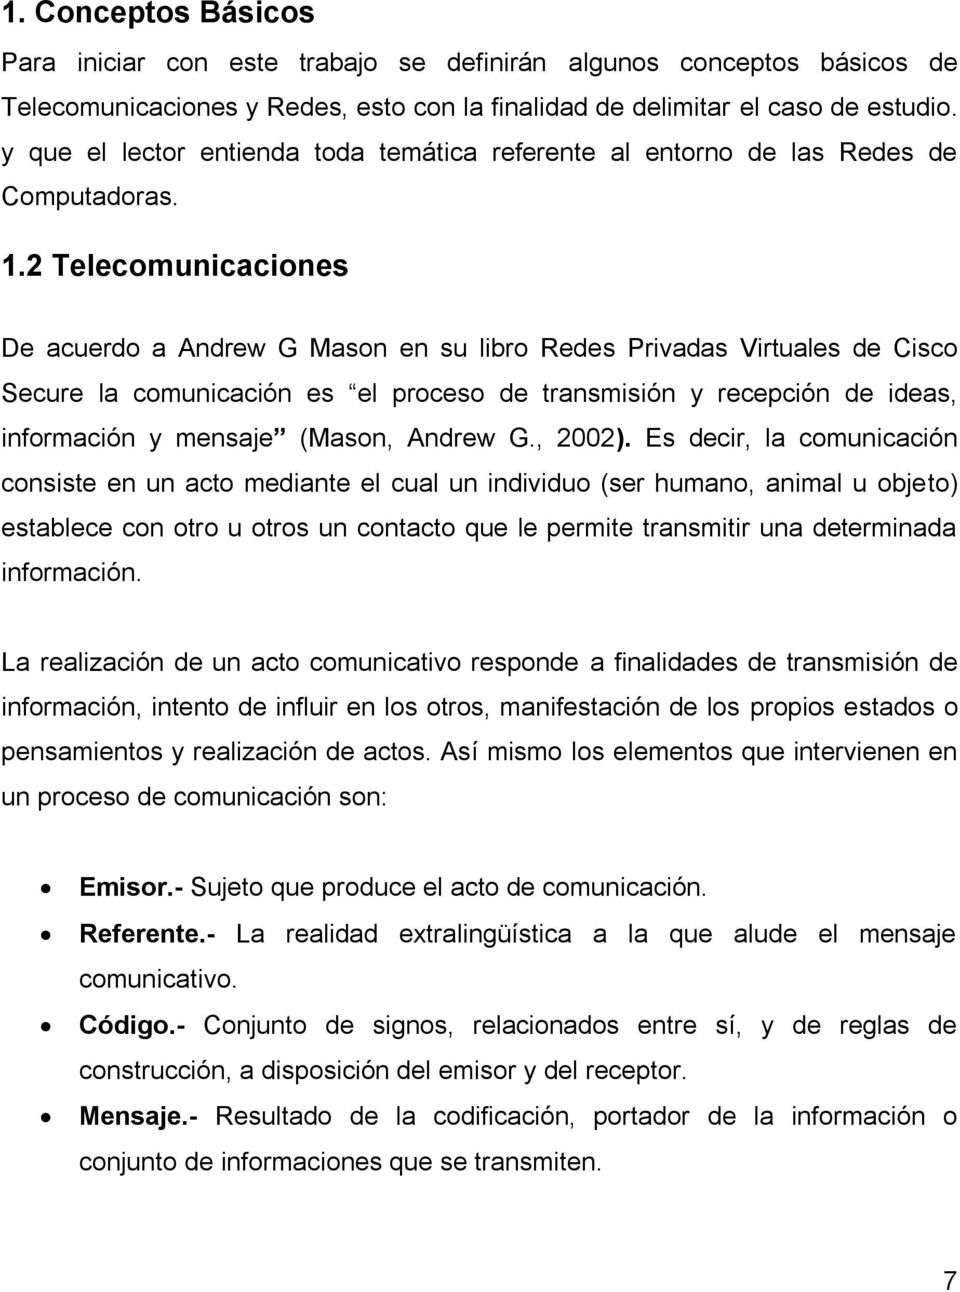 2 Telecomunicaciones De acuerdo a Andrew G Mason en su libro Redes Privadas Virtuales de Cisco Secure la comunicación es el proceso de transmisión y recepción de ideas, información y mensaje (Mason,